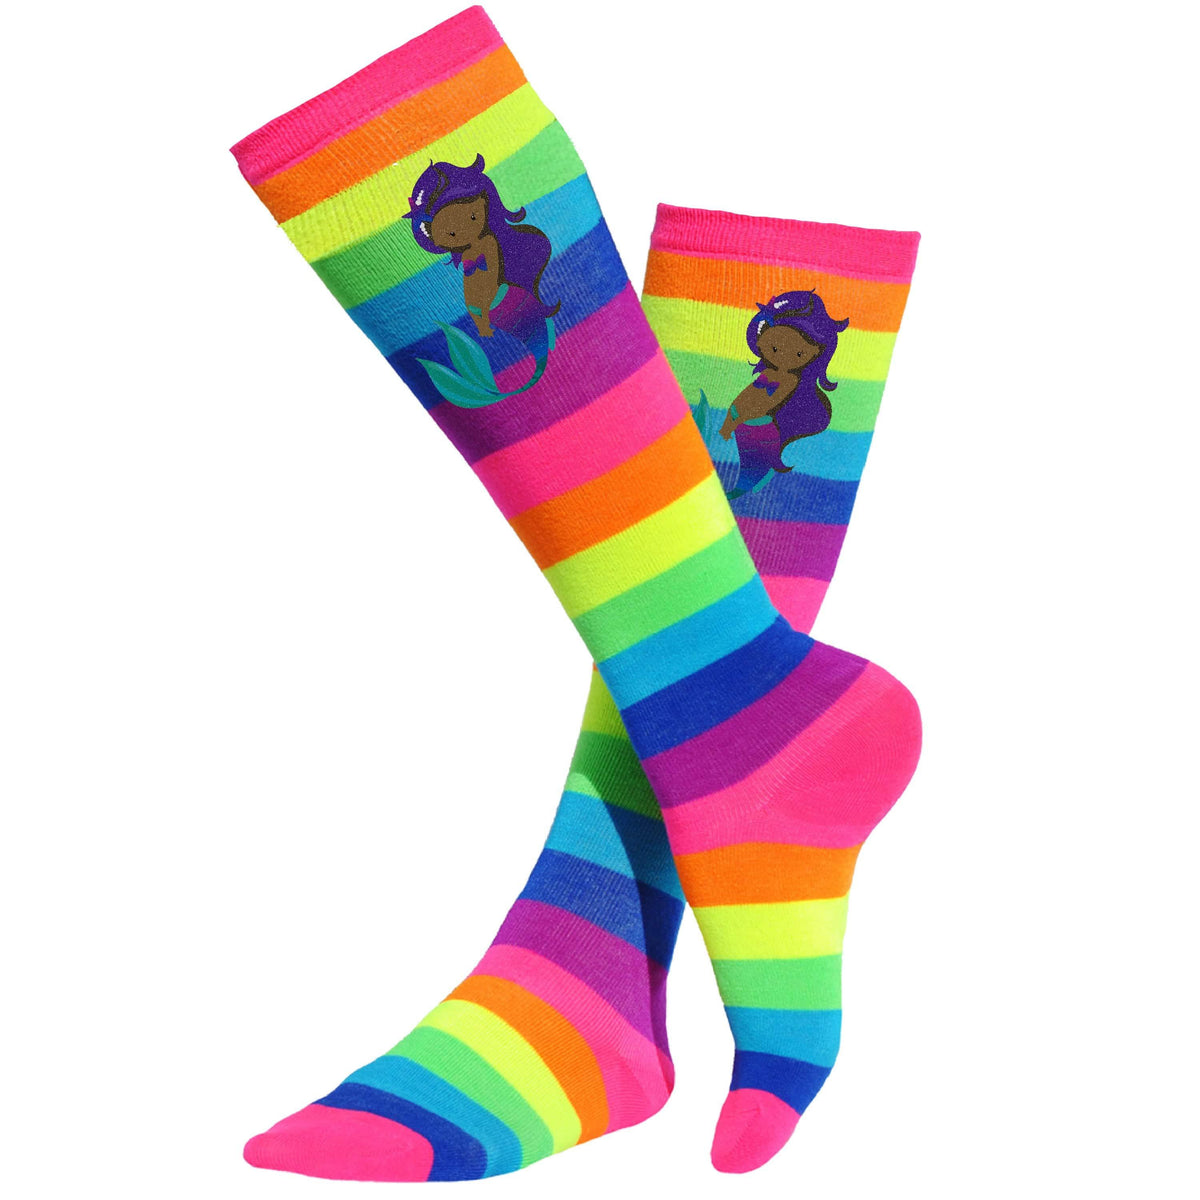 African American Mermaid rainbow knee high socks